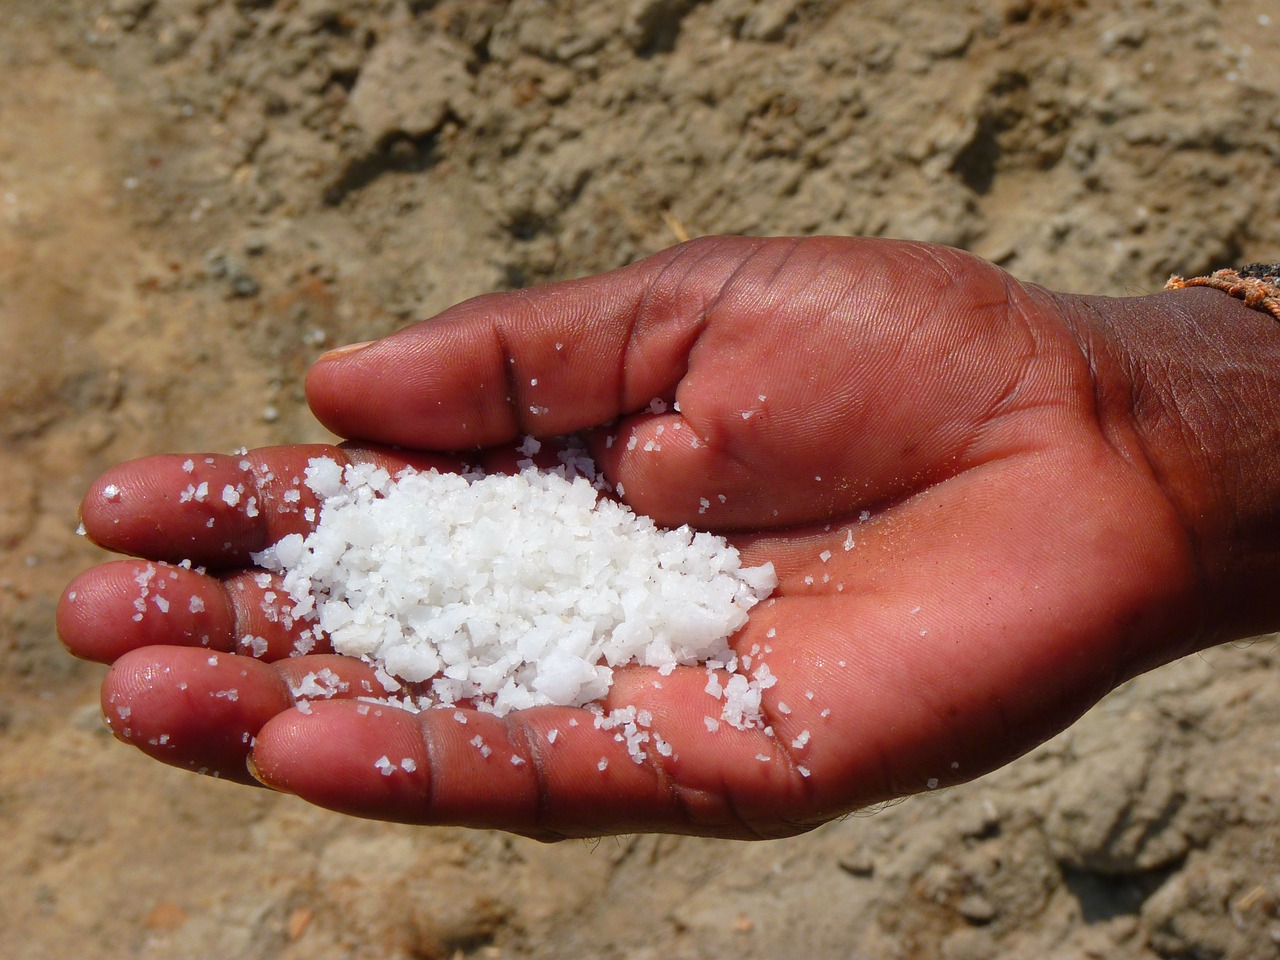  В каких маркетах или базарах продается соль крупного помола в Анталии? 